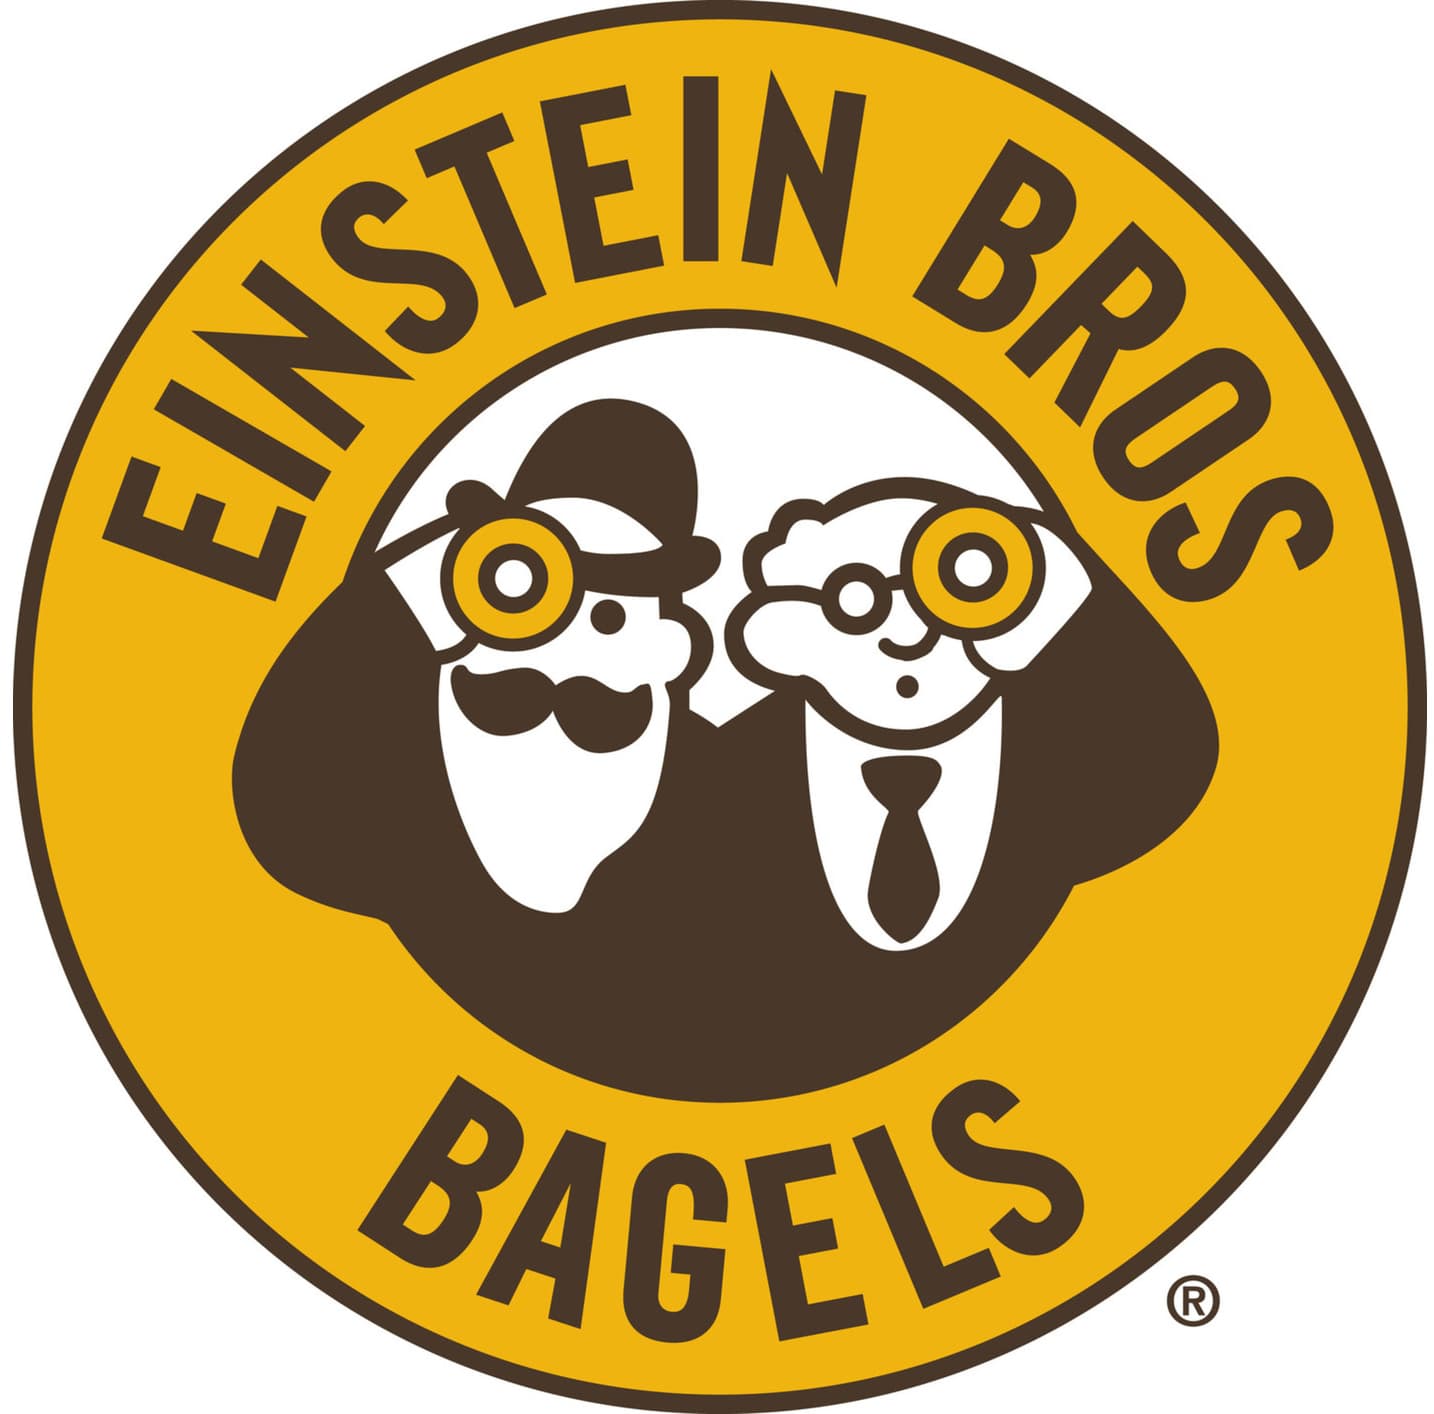 Einstein Bagels logo